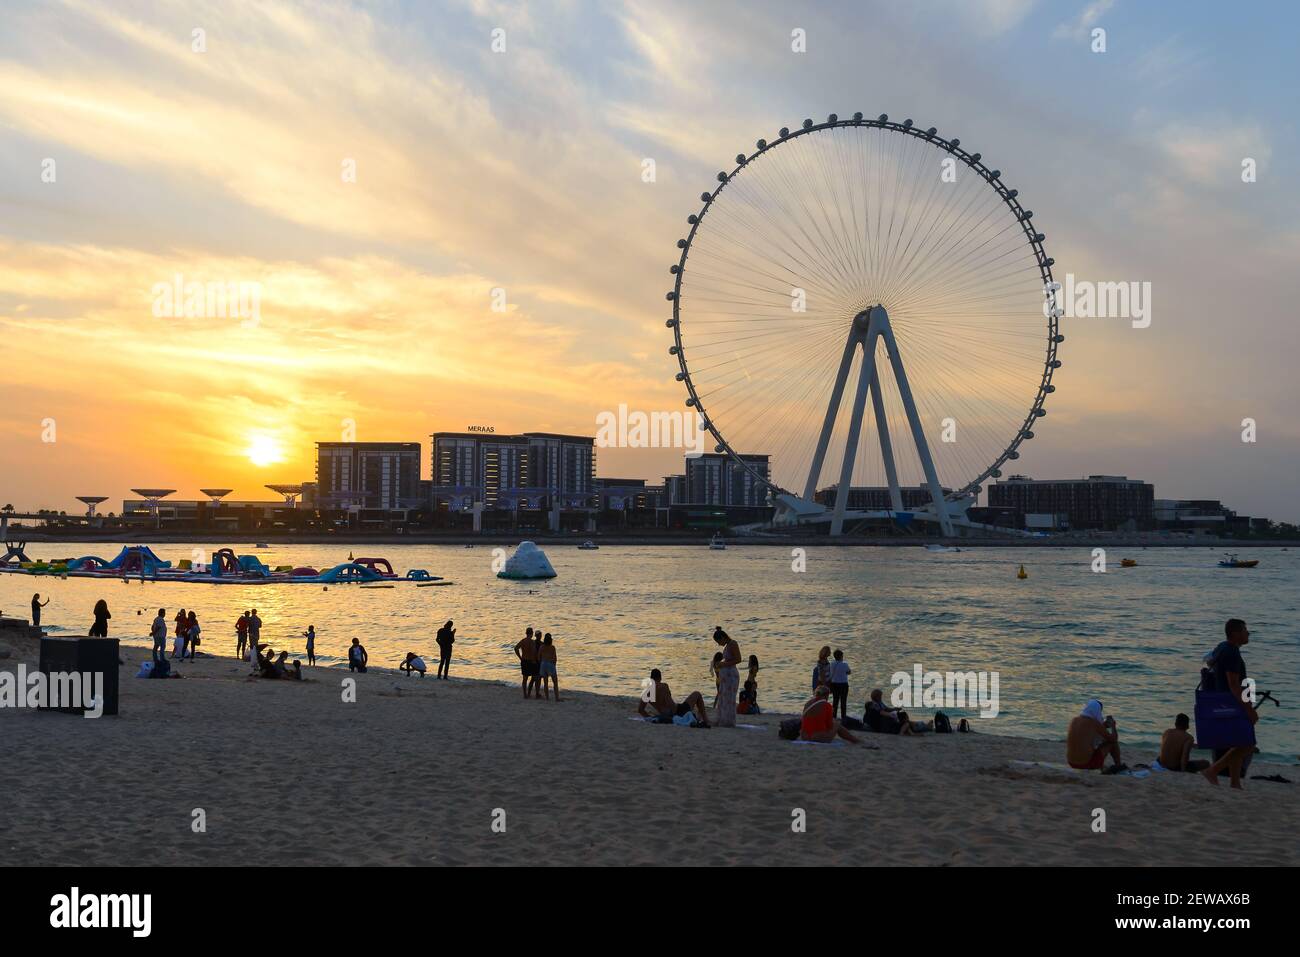 Turistas en JBR Marina Beach durante la puesta de sol y Ain Dubai Ojo de la silueta de la rueda de ferris. Emiratos Árabes Unidos está abierto para el turismo con restricciones COVID. Foto de stock